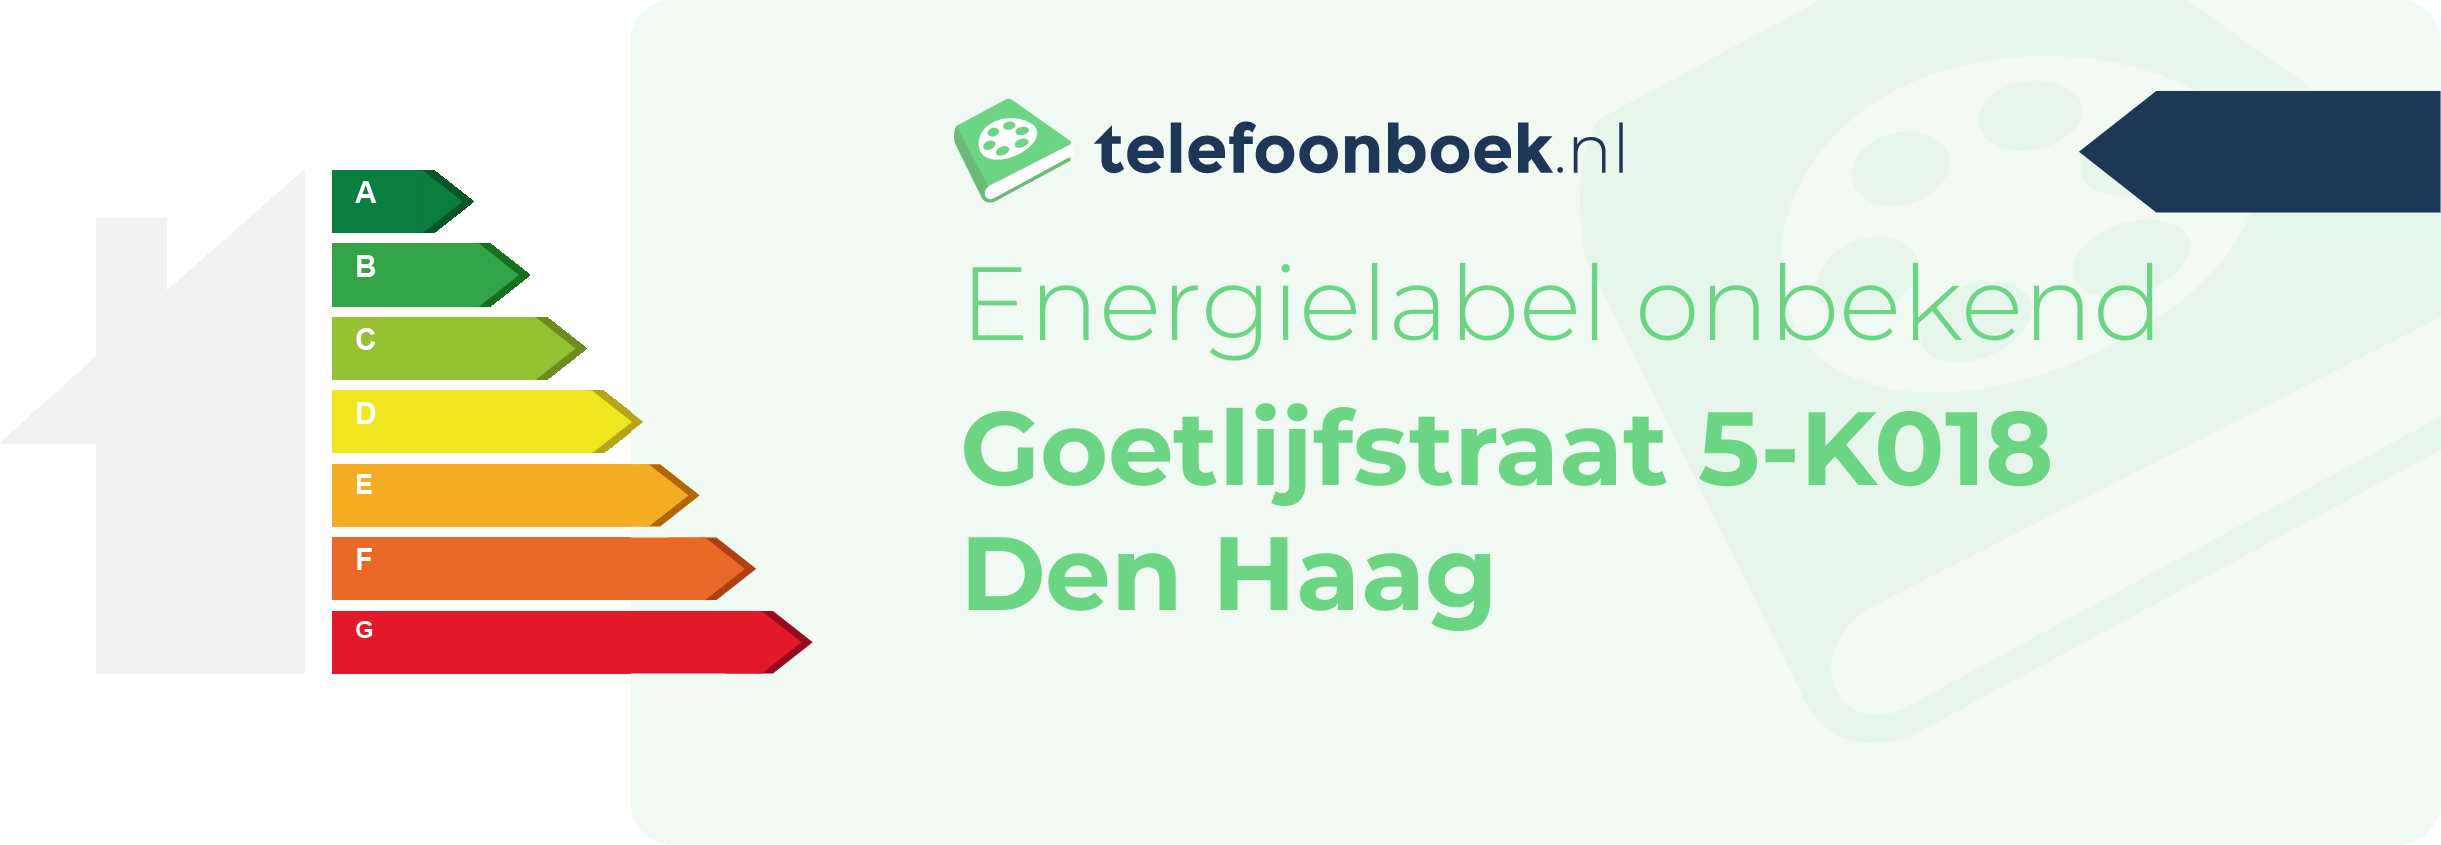 Energielabel Goetlijfstraat 5-K018 Den Haag